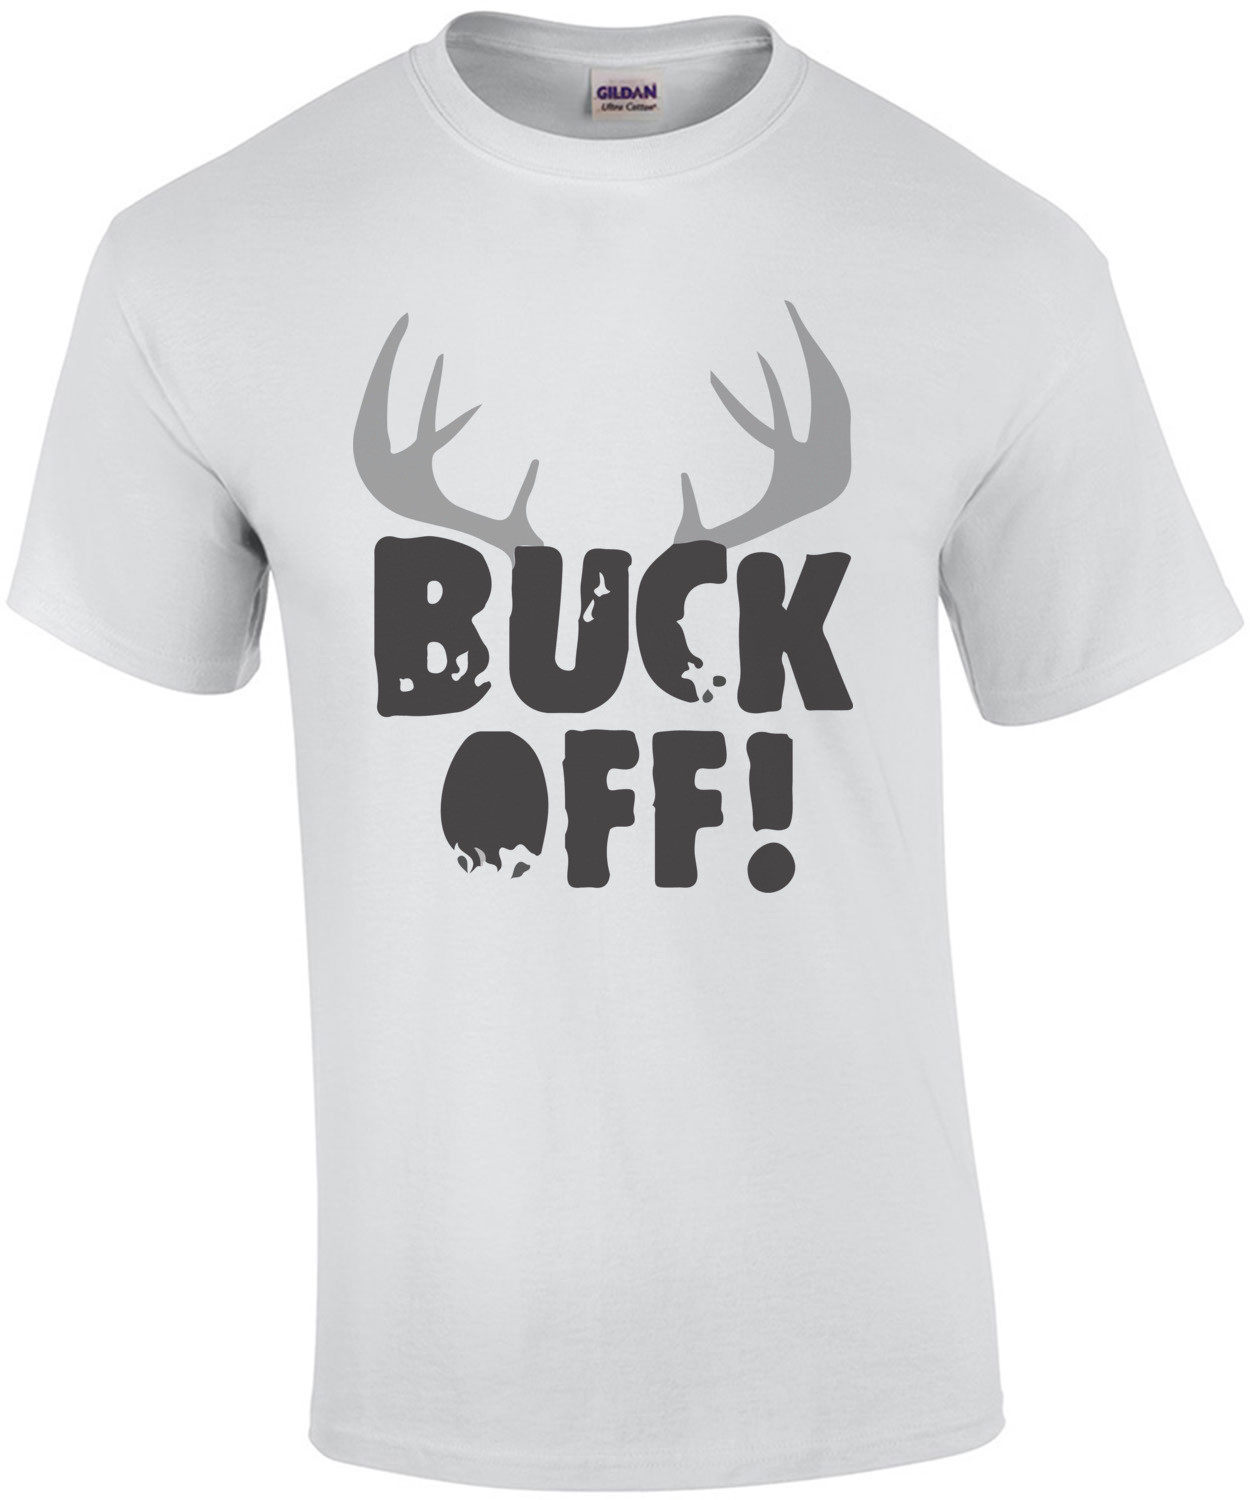 Buck Off T-Shirt - Hunting T-Shirt